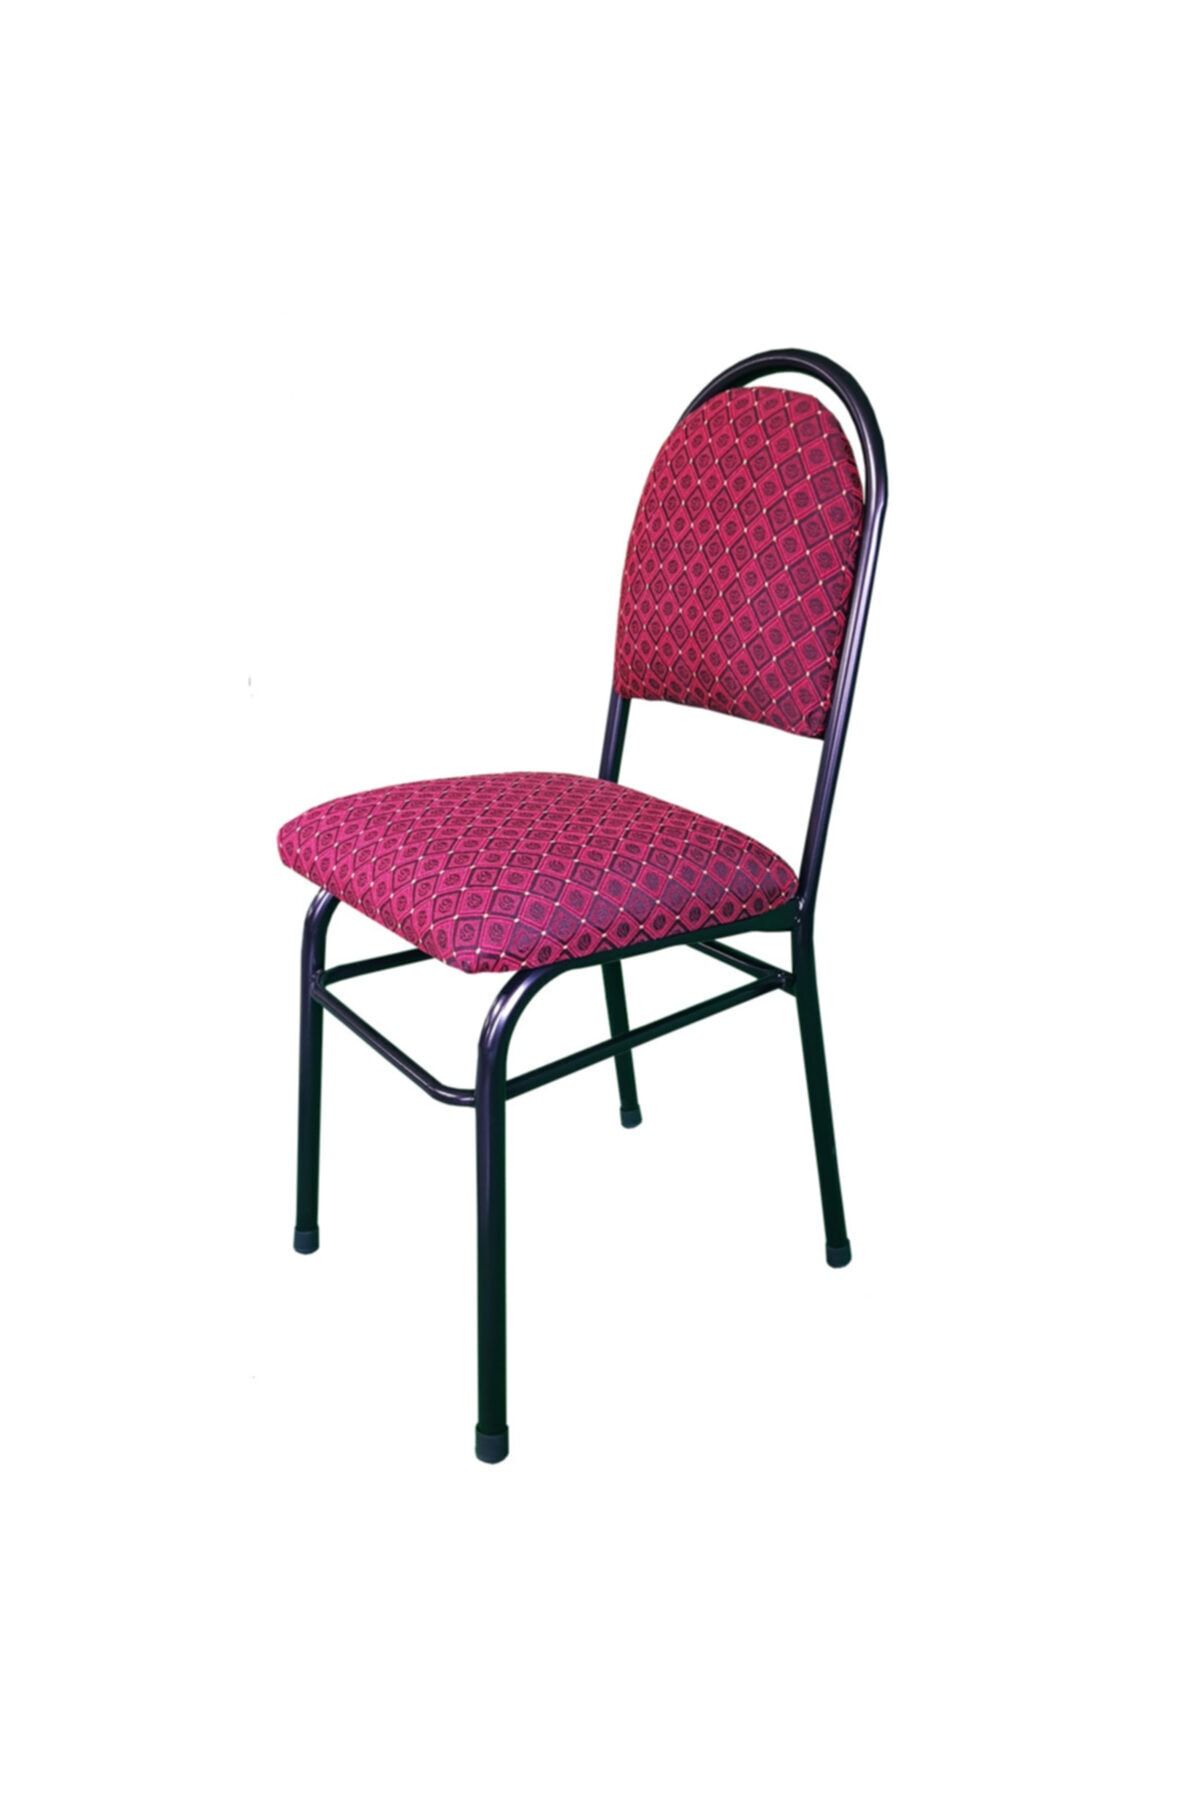 Lort Sandalye Kırmızı Desenli Minder_0